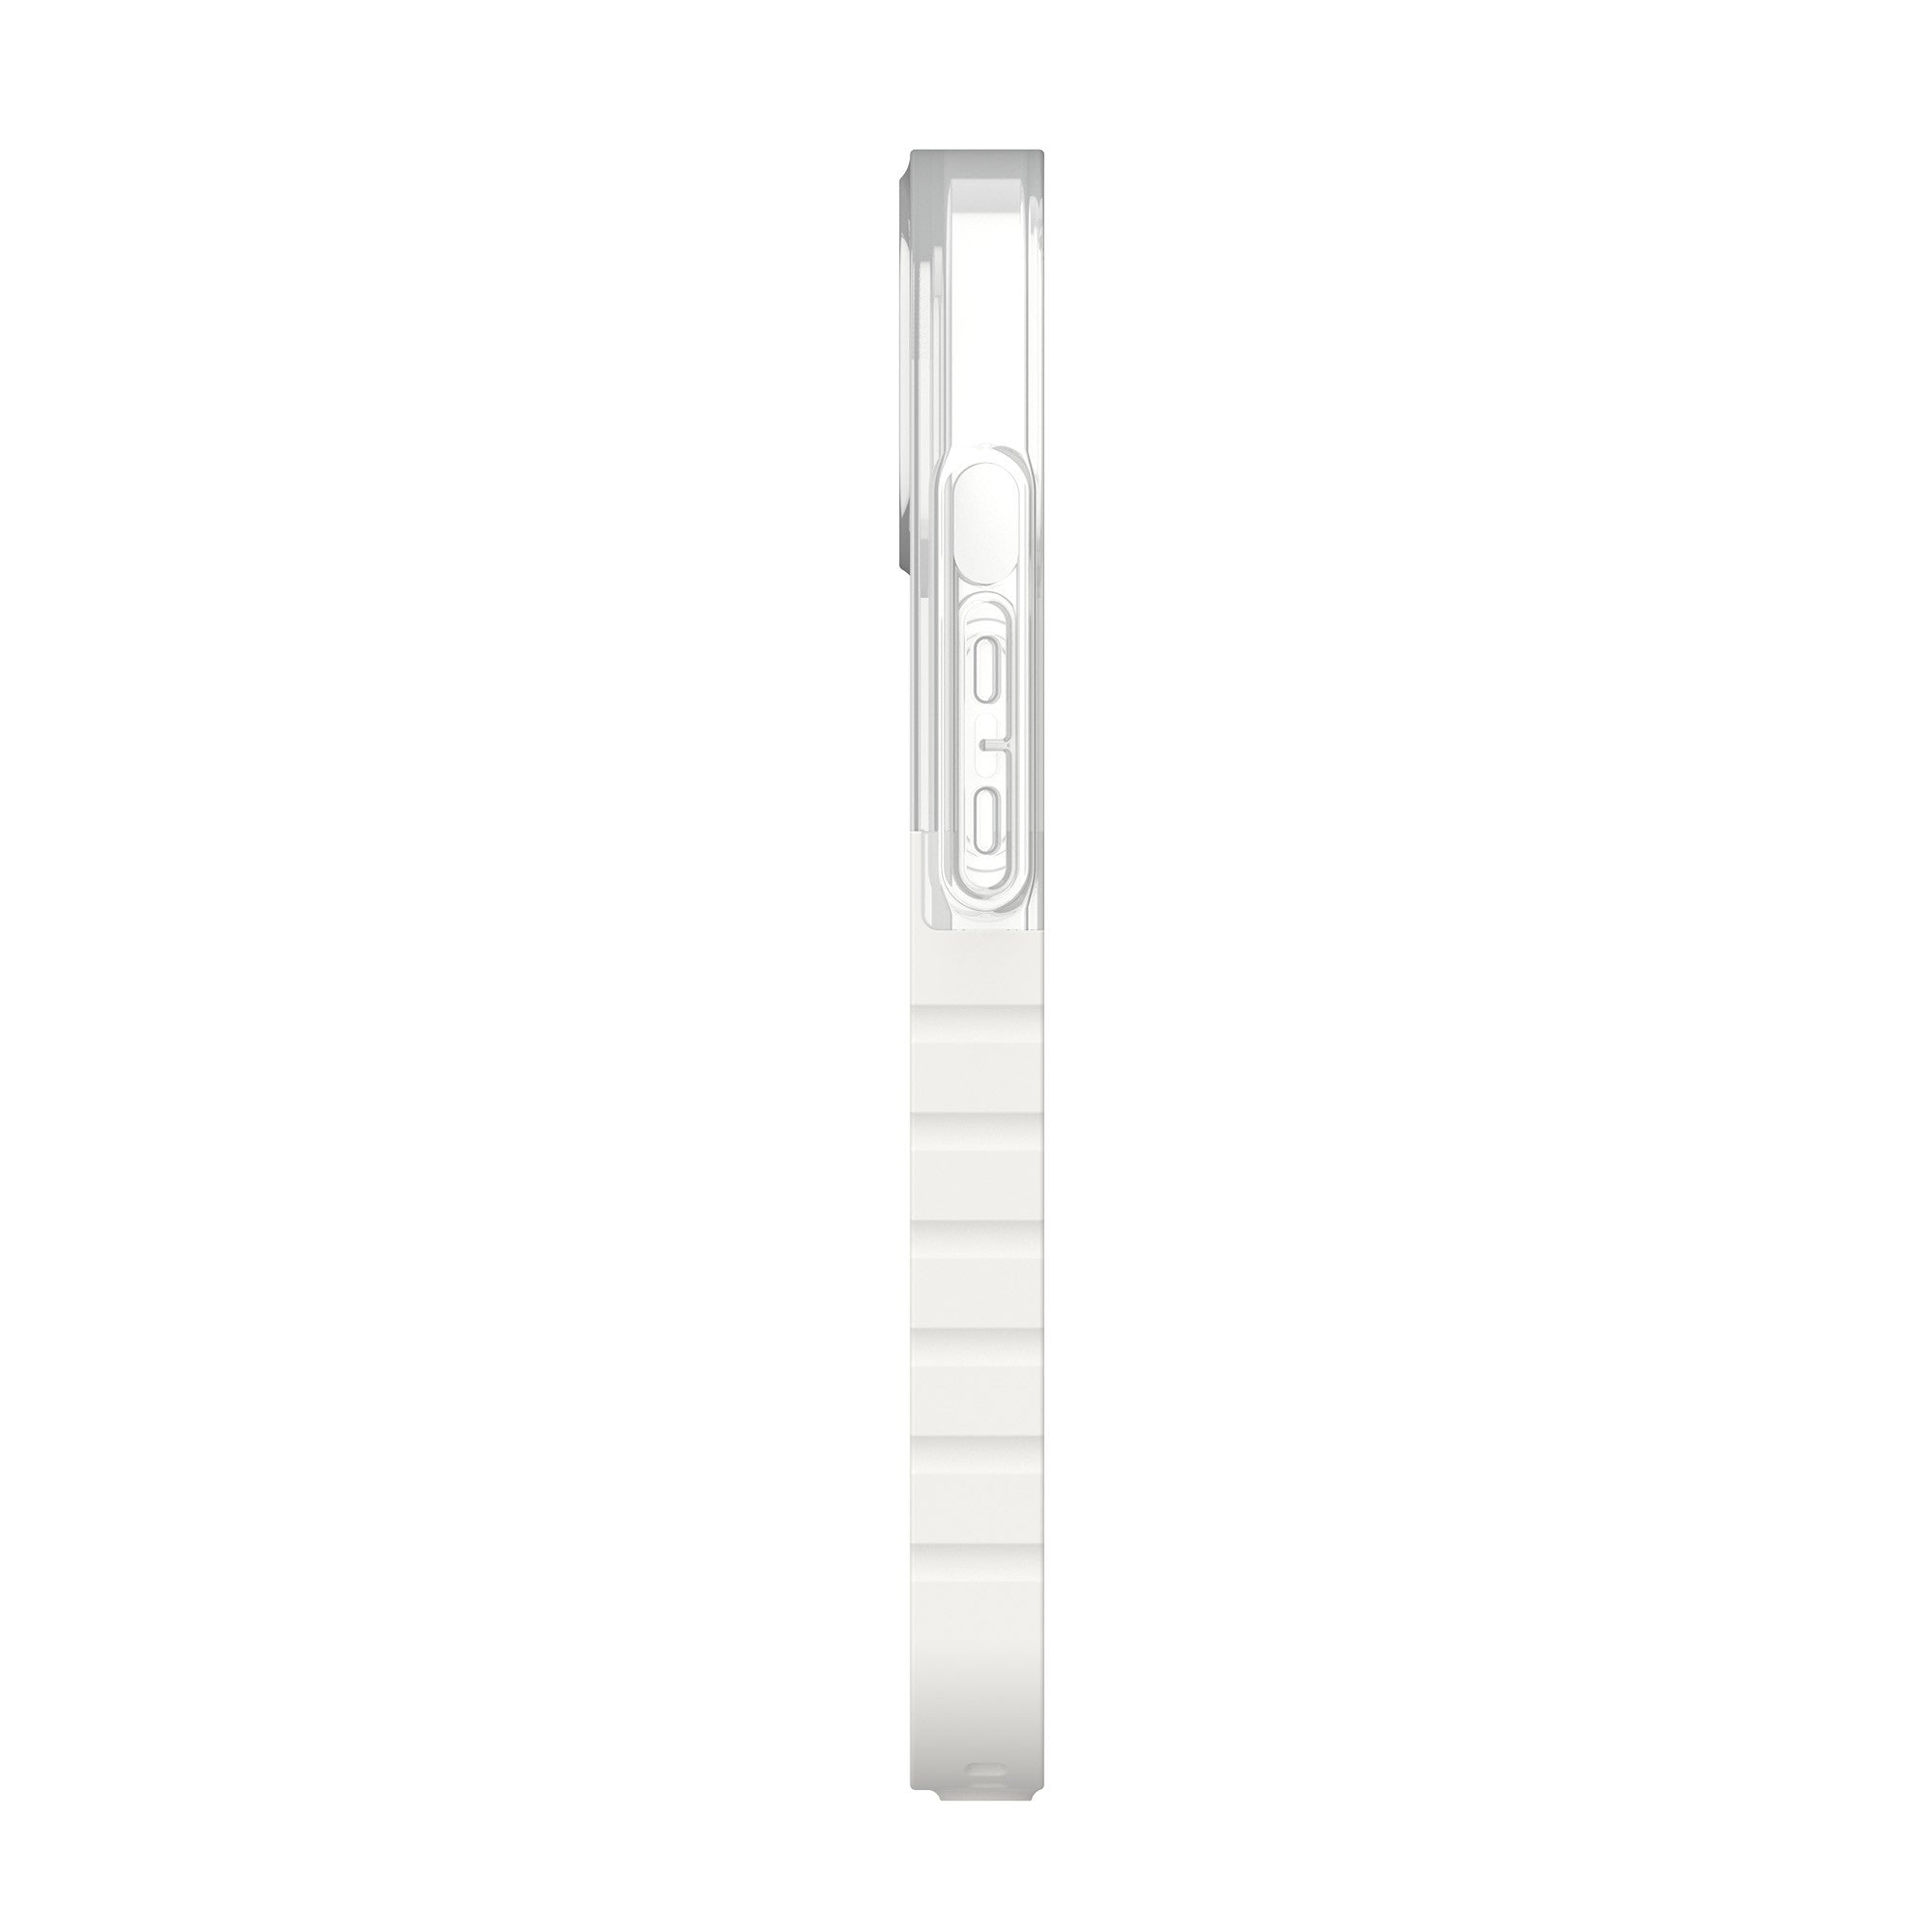 iPhone 13 UAG White (Marshmallow) Dip Case - 15-08956